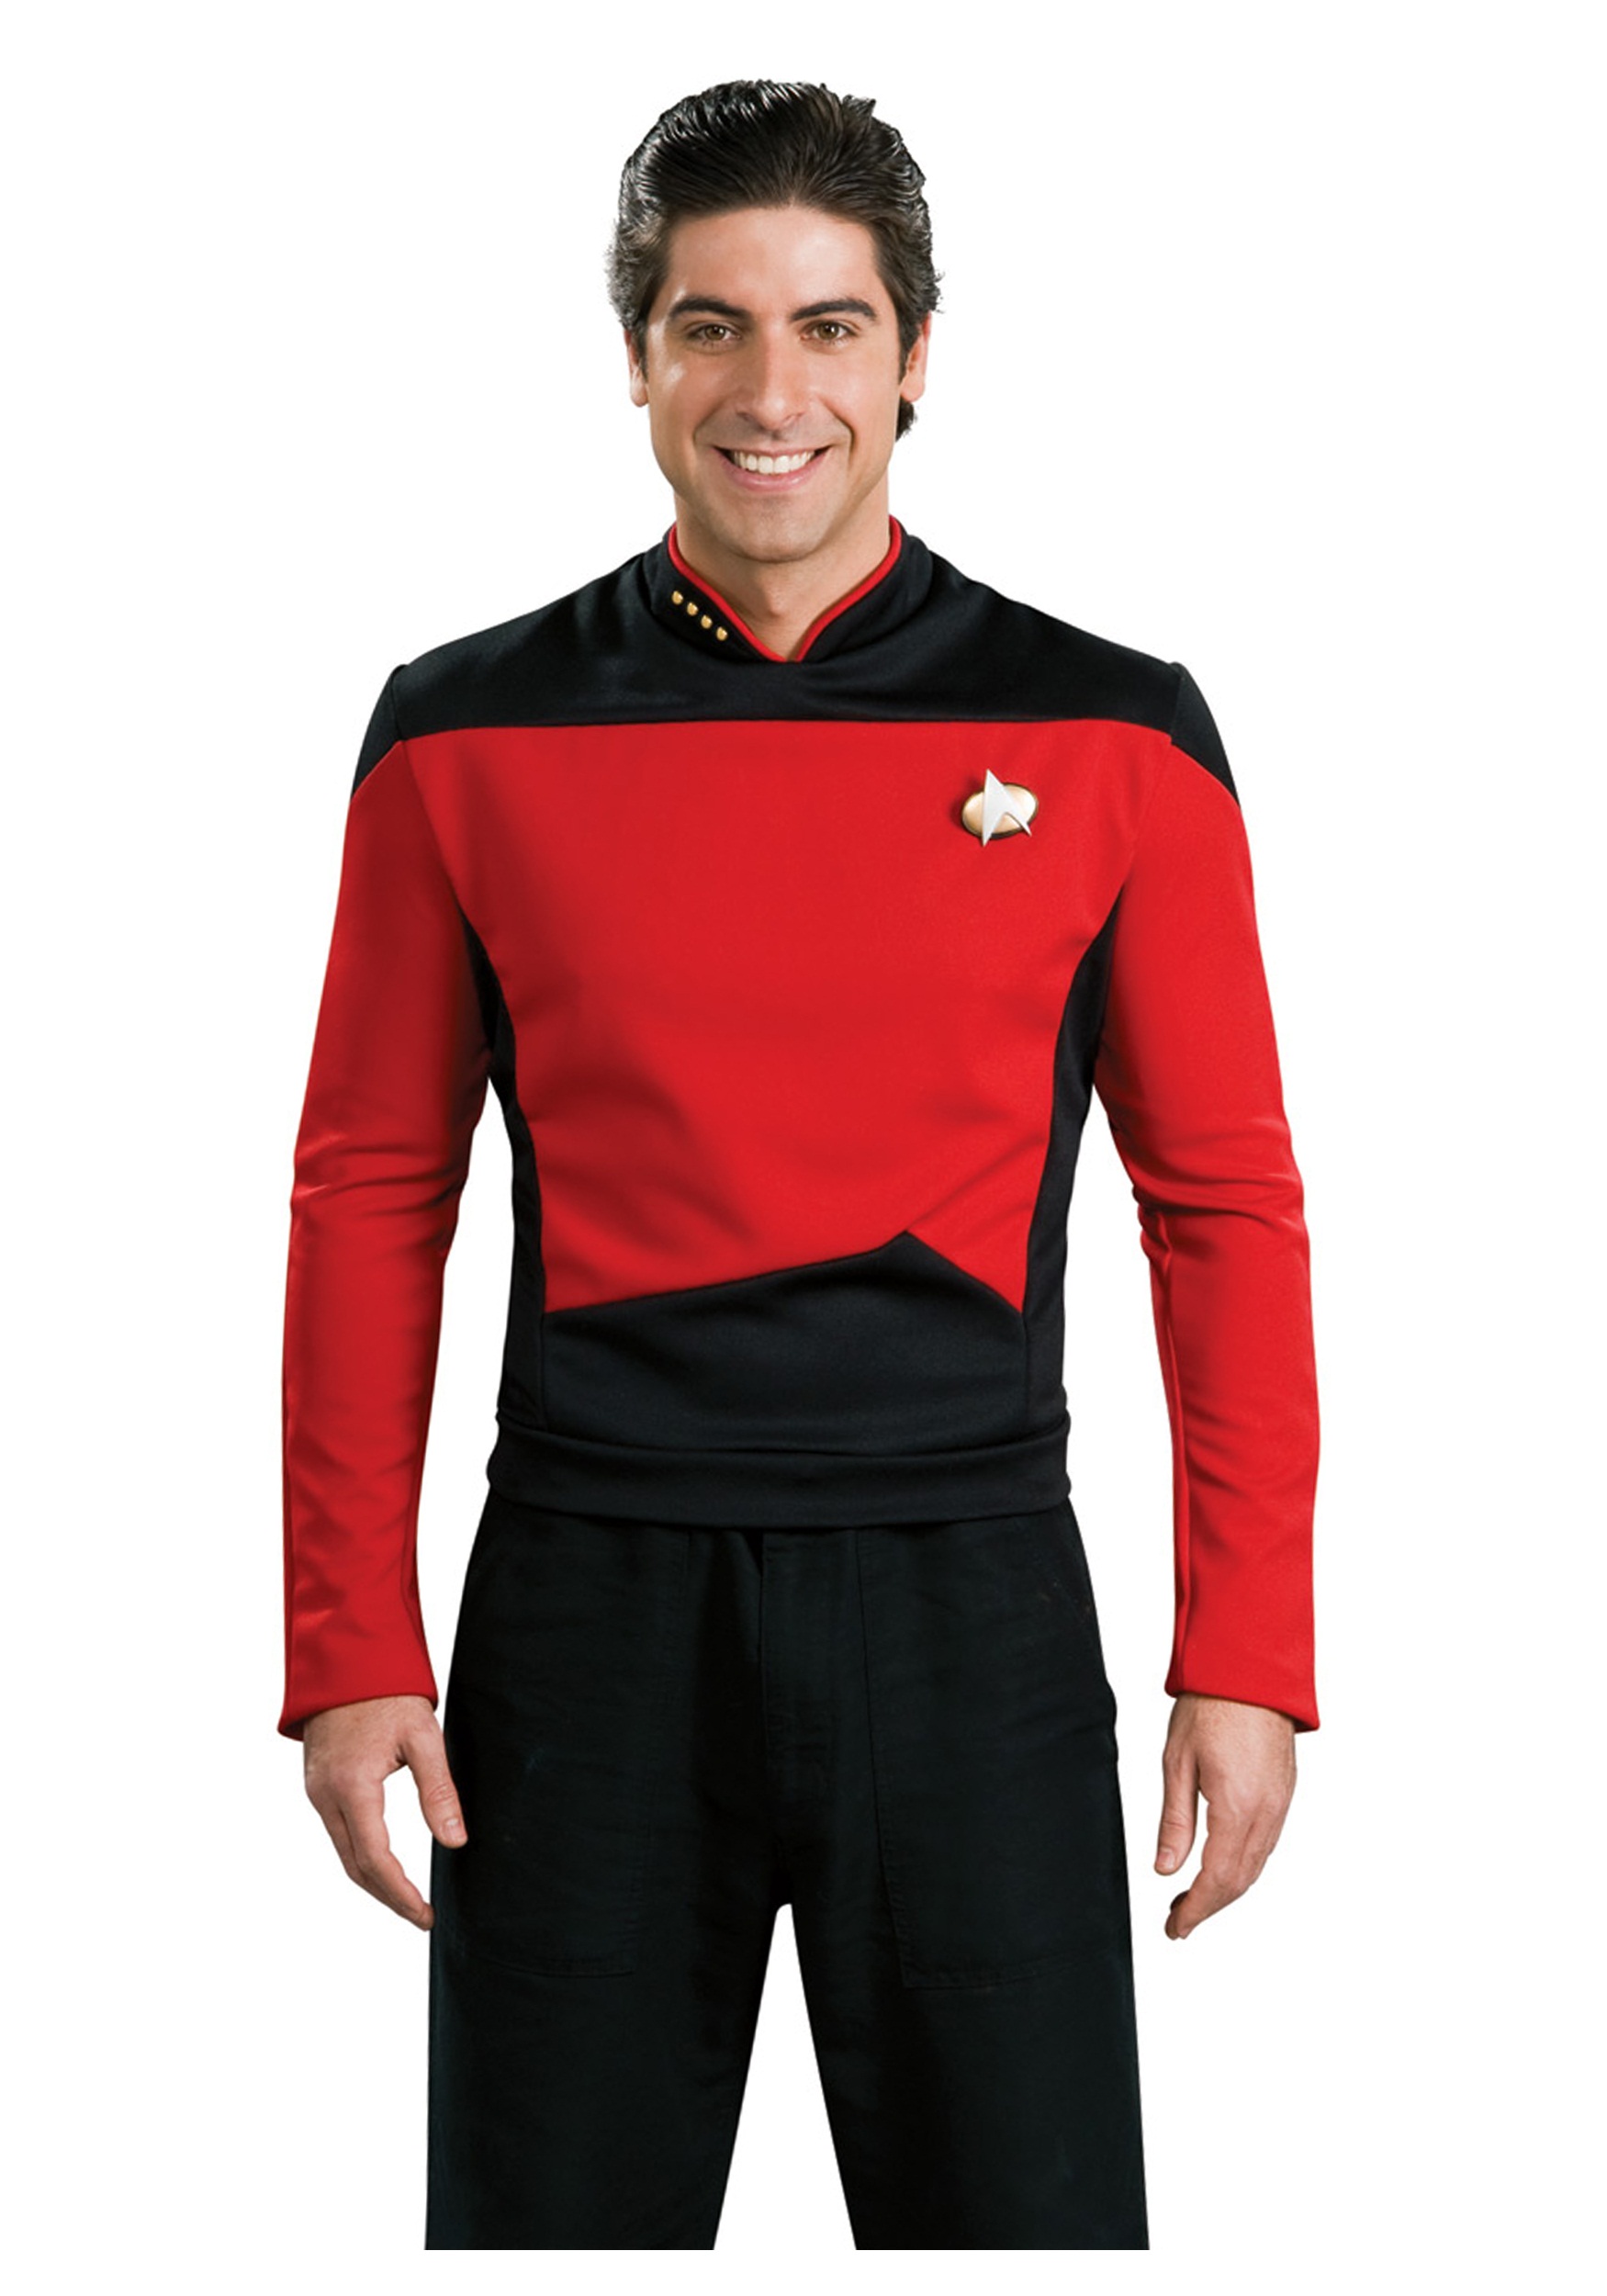 Star Trek: TNG Men’s Deluxe Command Uniform Costume